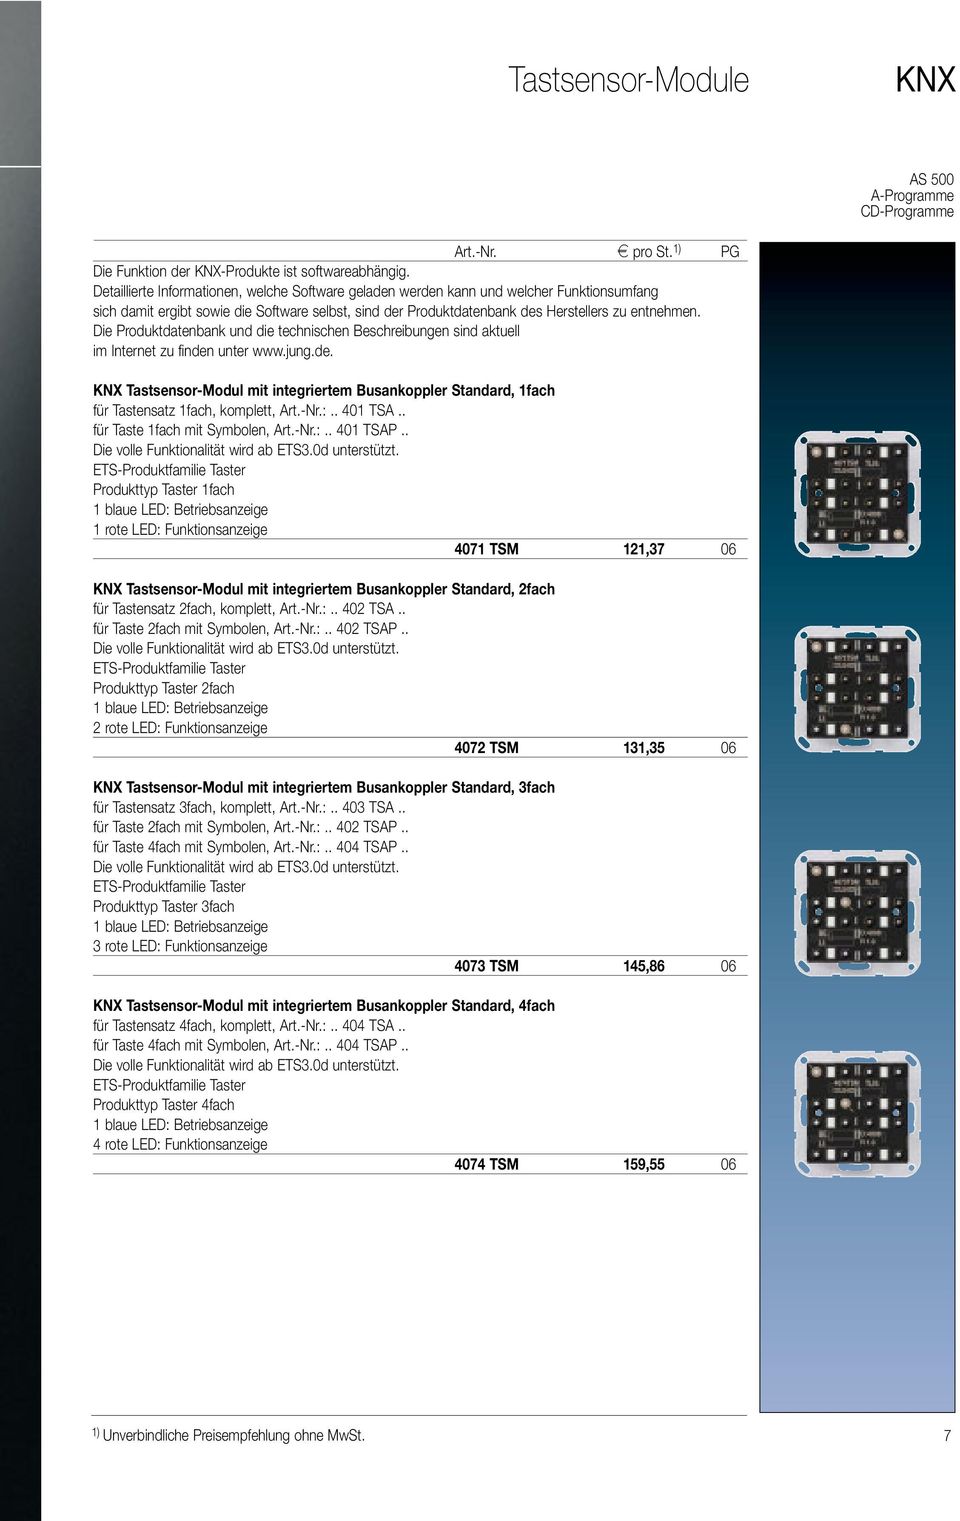 Die Produktdatenbank und die technischen Beschreibungen sind aktuell im Internet zu finden unter www.jung.de. KNX Tastsensor-Modul mit integriertem Busankoppler Standard, 1fach für Tastensatz 1fach, komplett, Art.